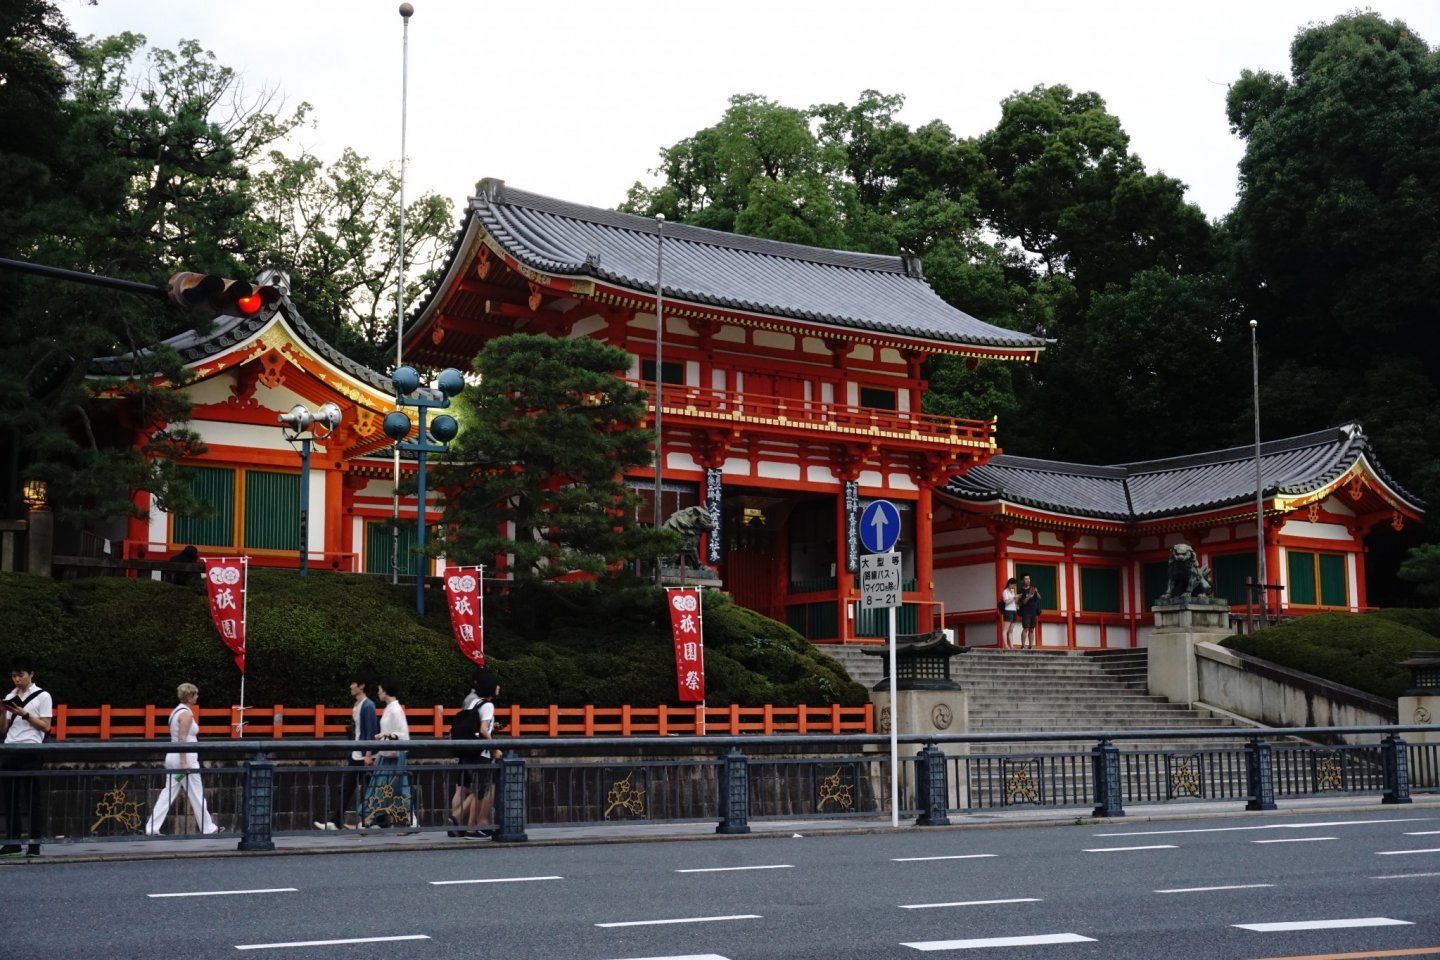 Yasaka Shrine tetap berdiri megah ditengah peradaban dan kemajuan Gion